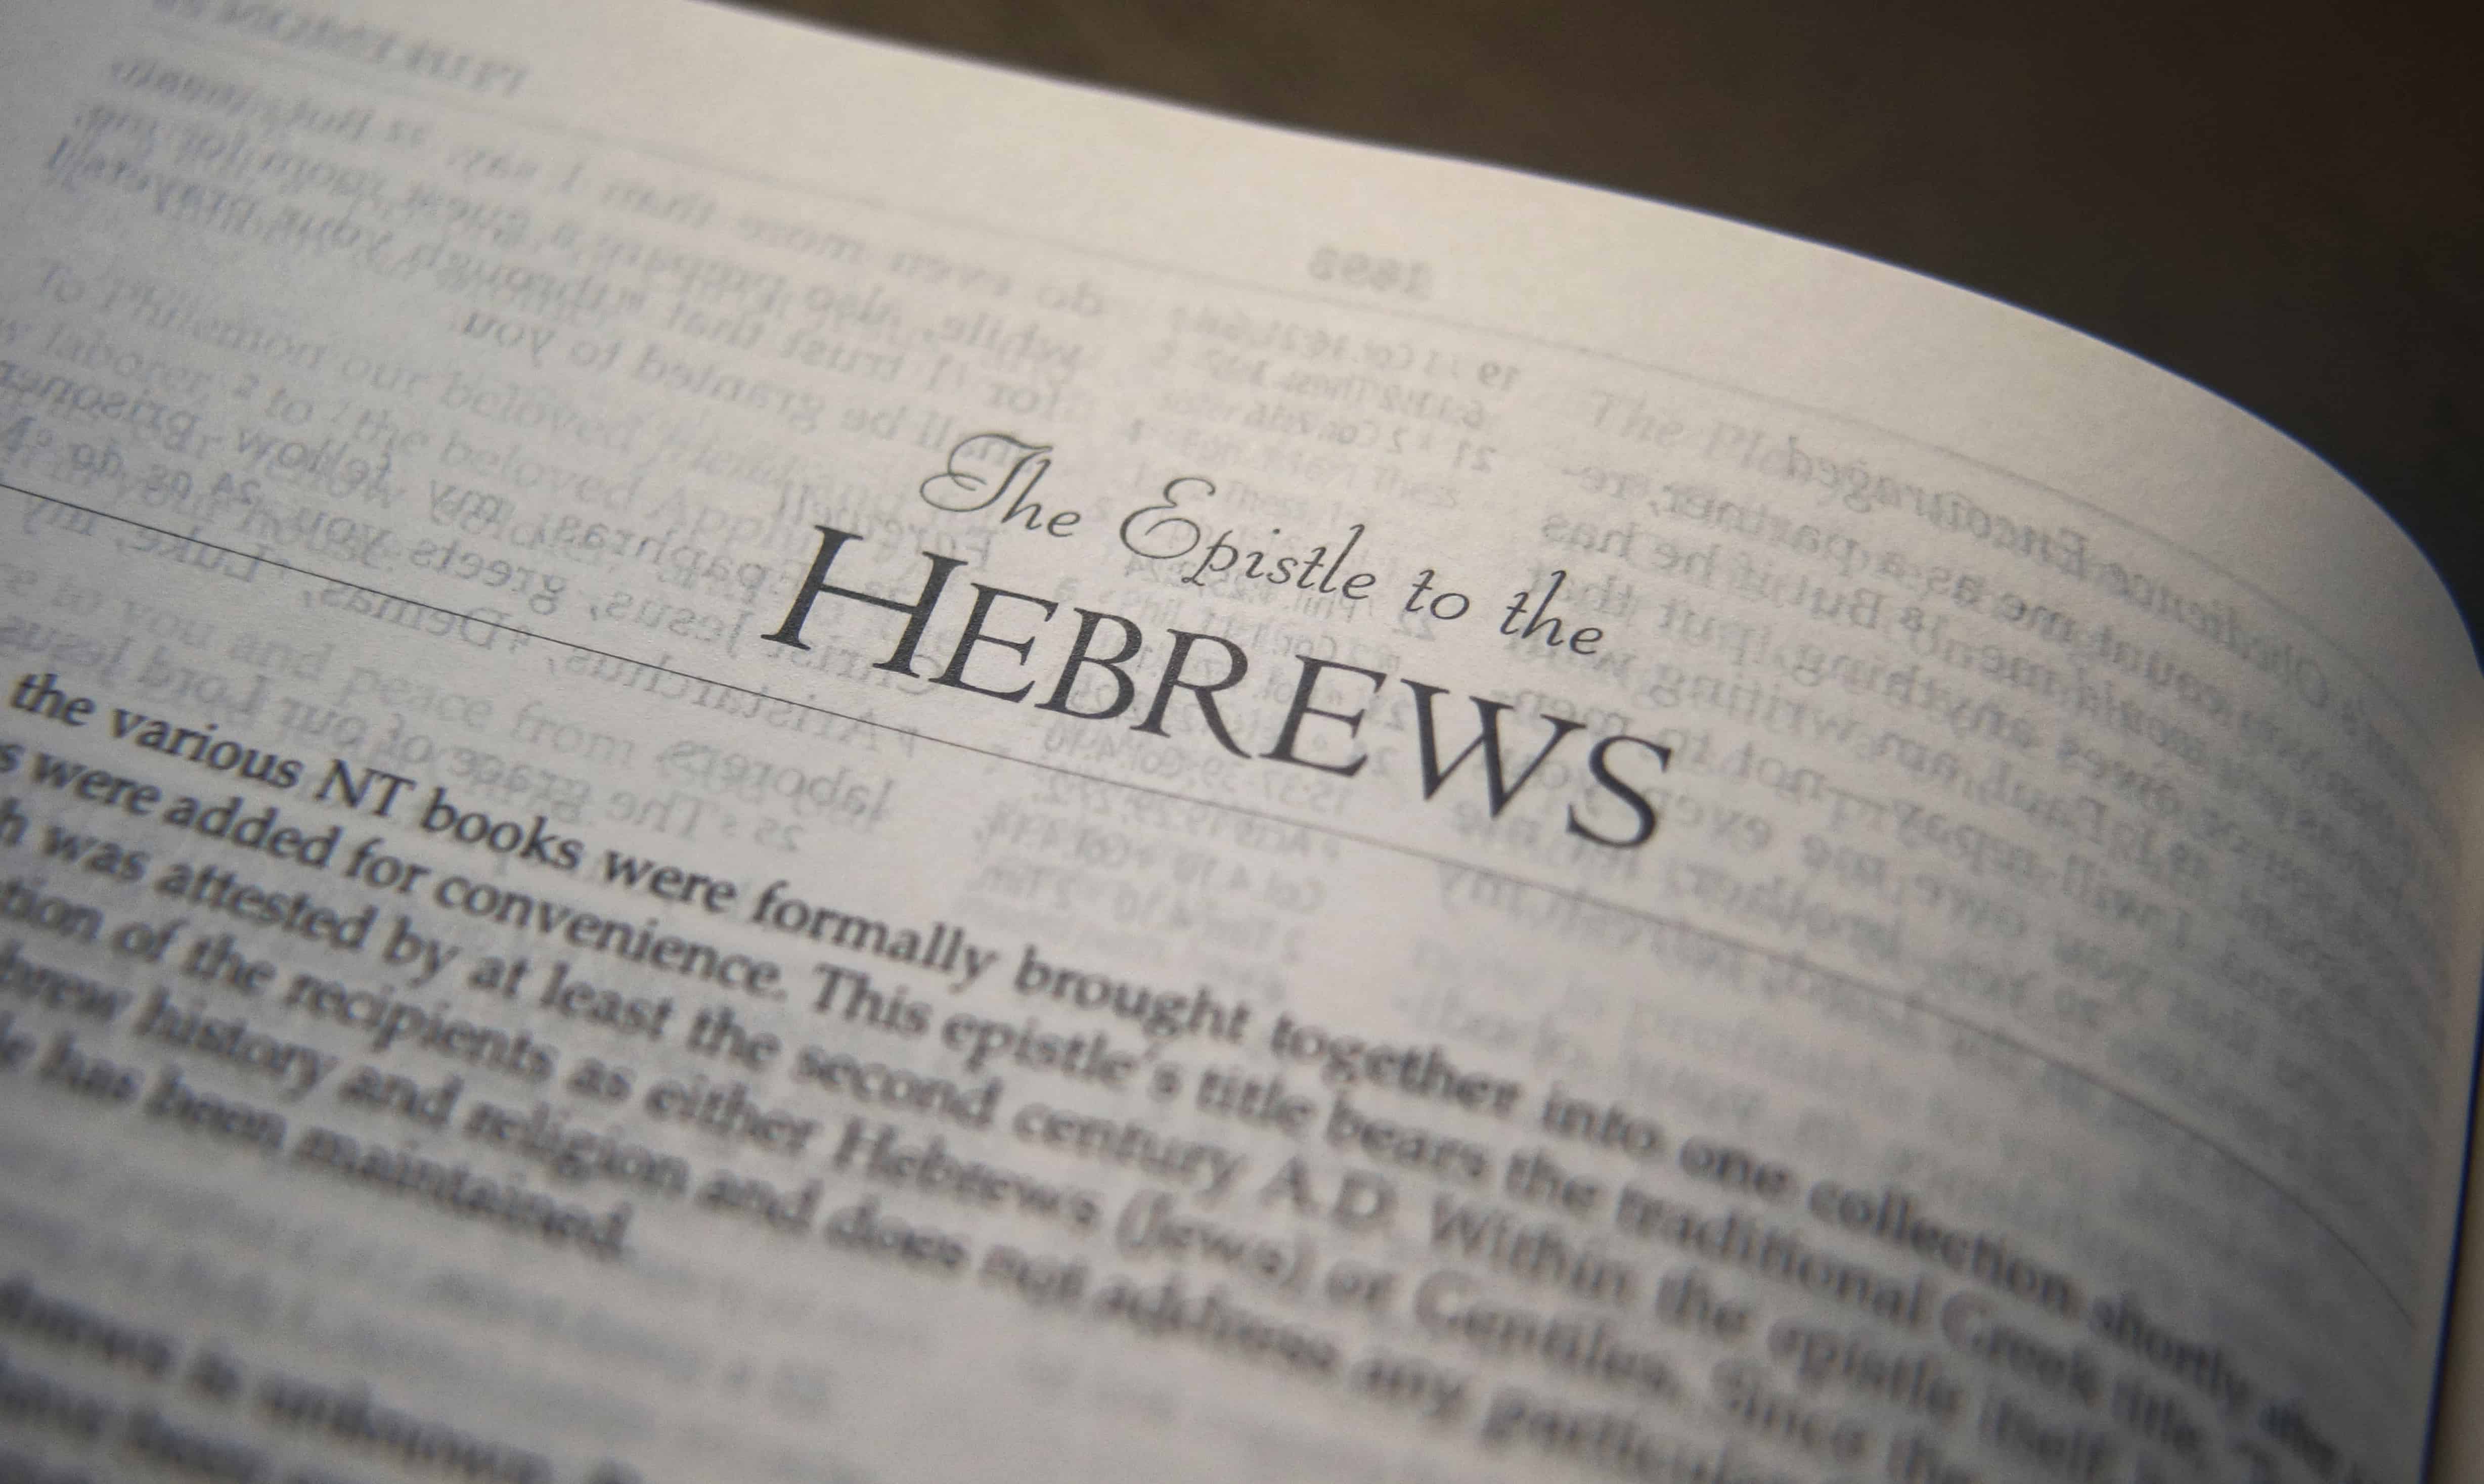 better a study of hebrews